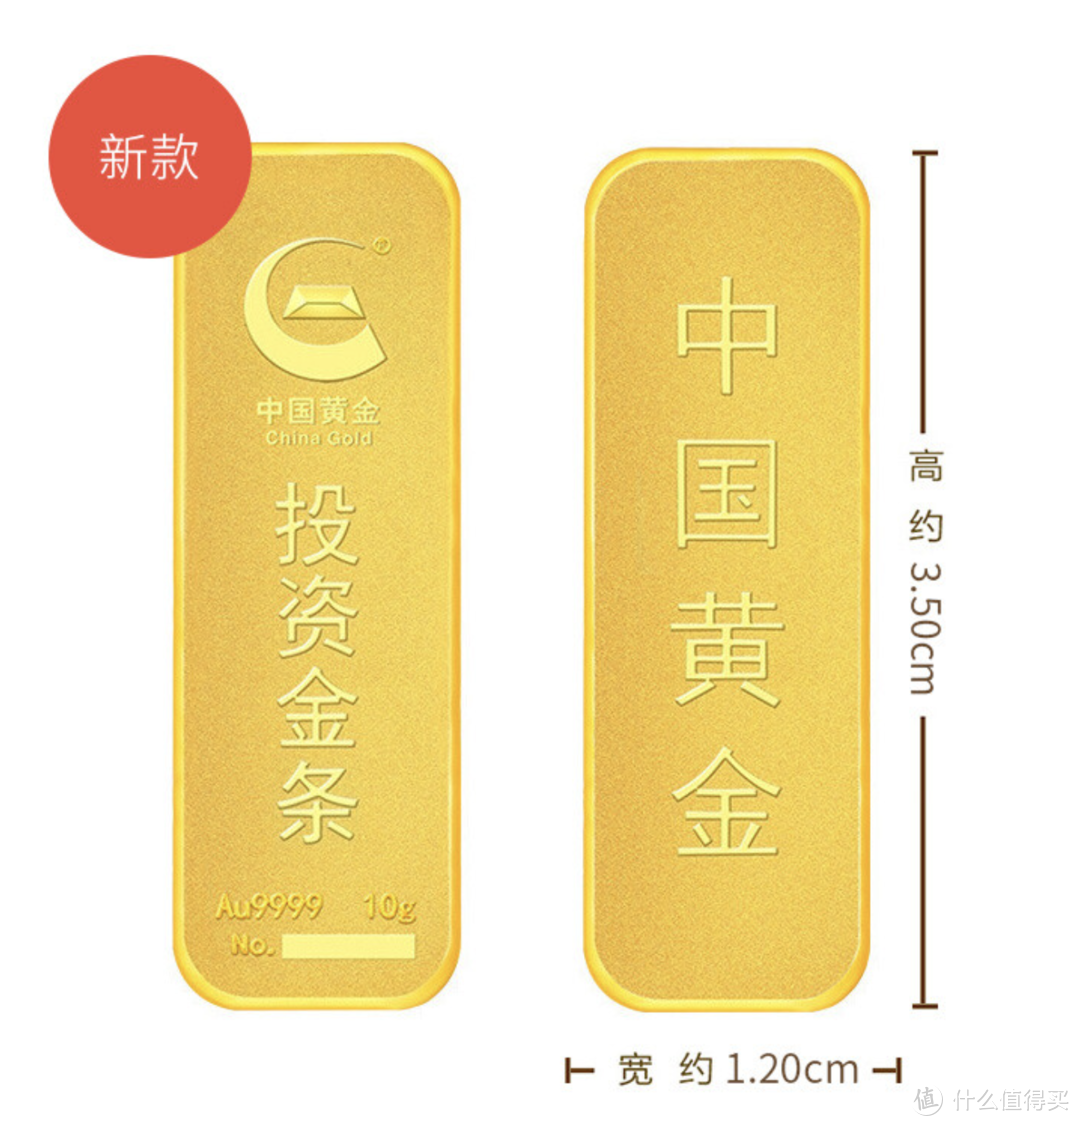 【双十一黄金采购清单】458/克上车了中国黄金，不后悔，